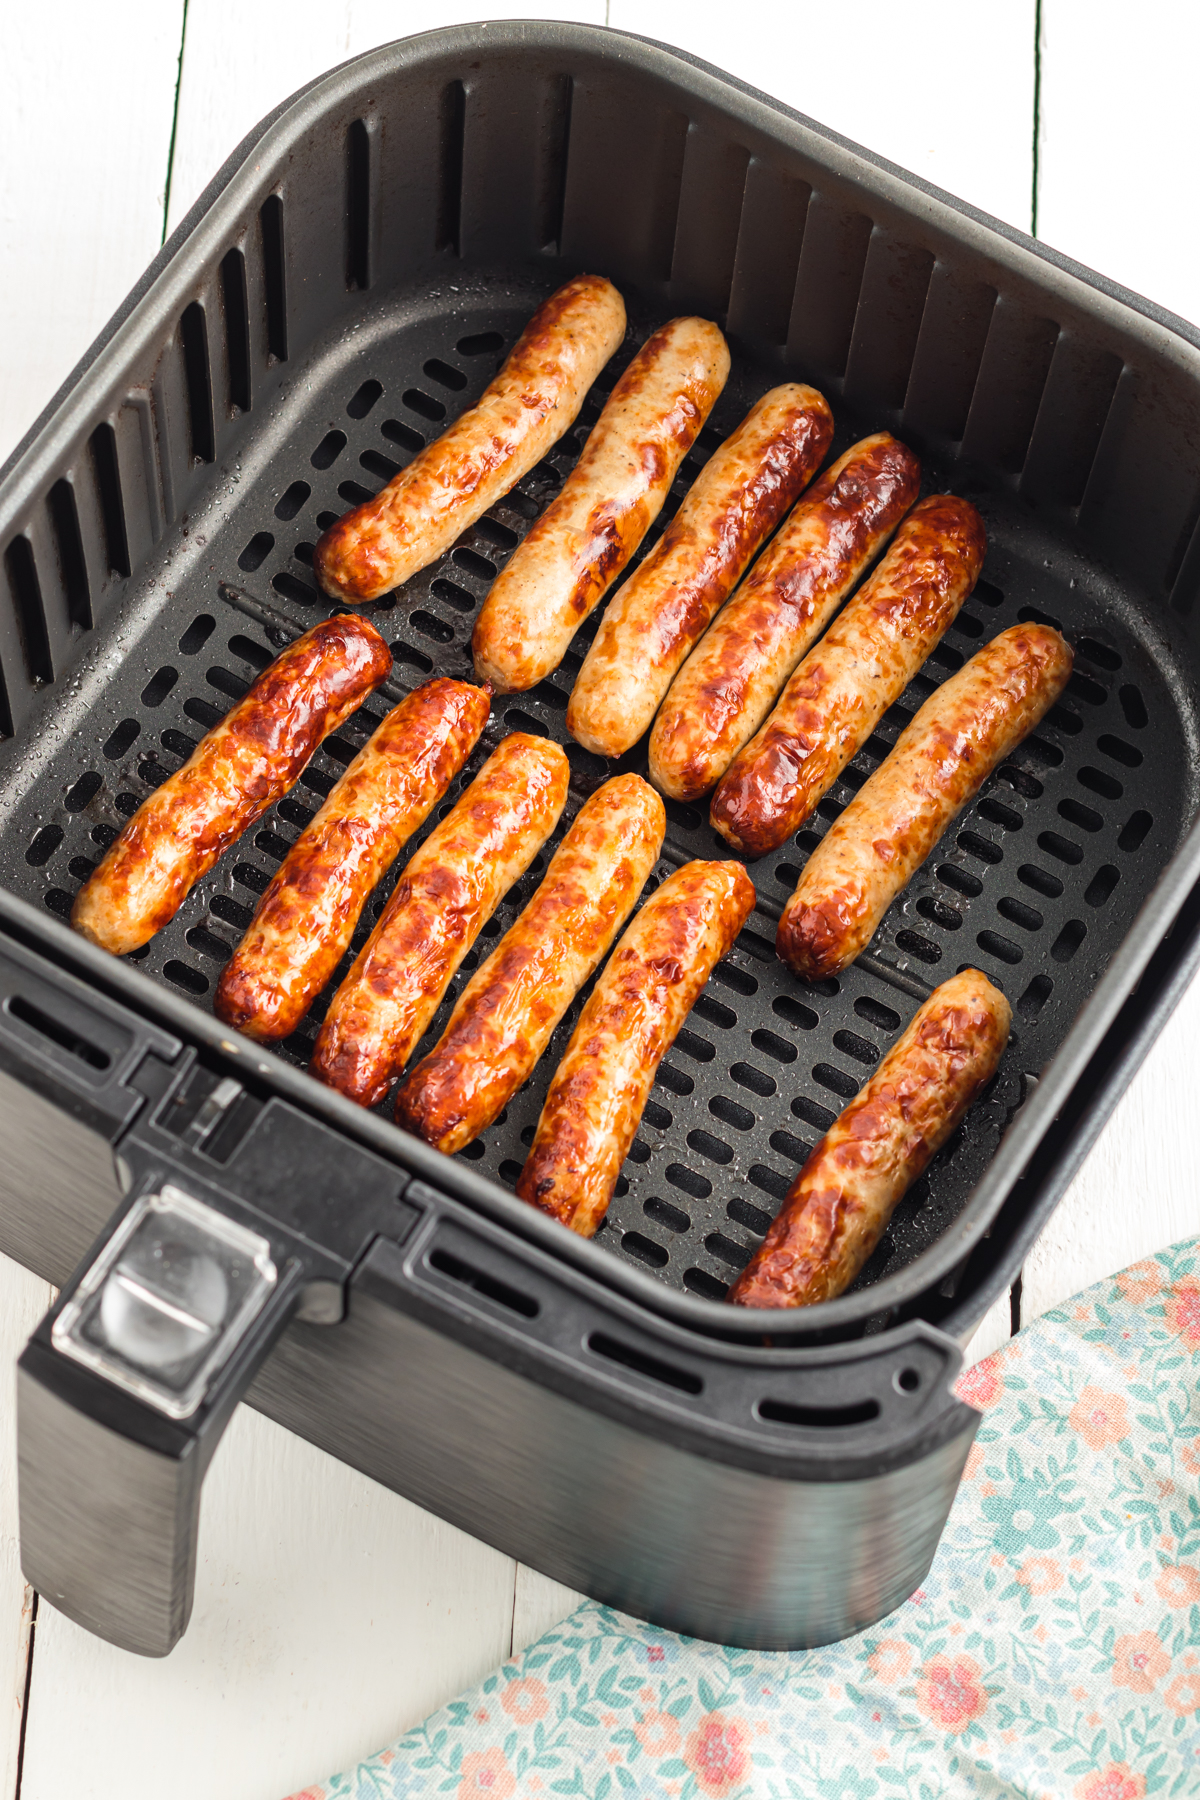 Sausage links in air fryer basket.